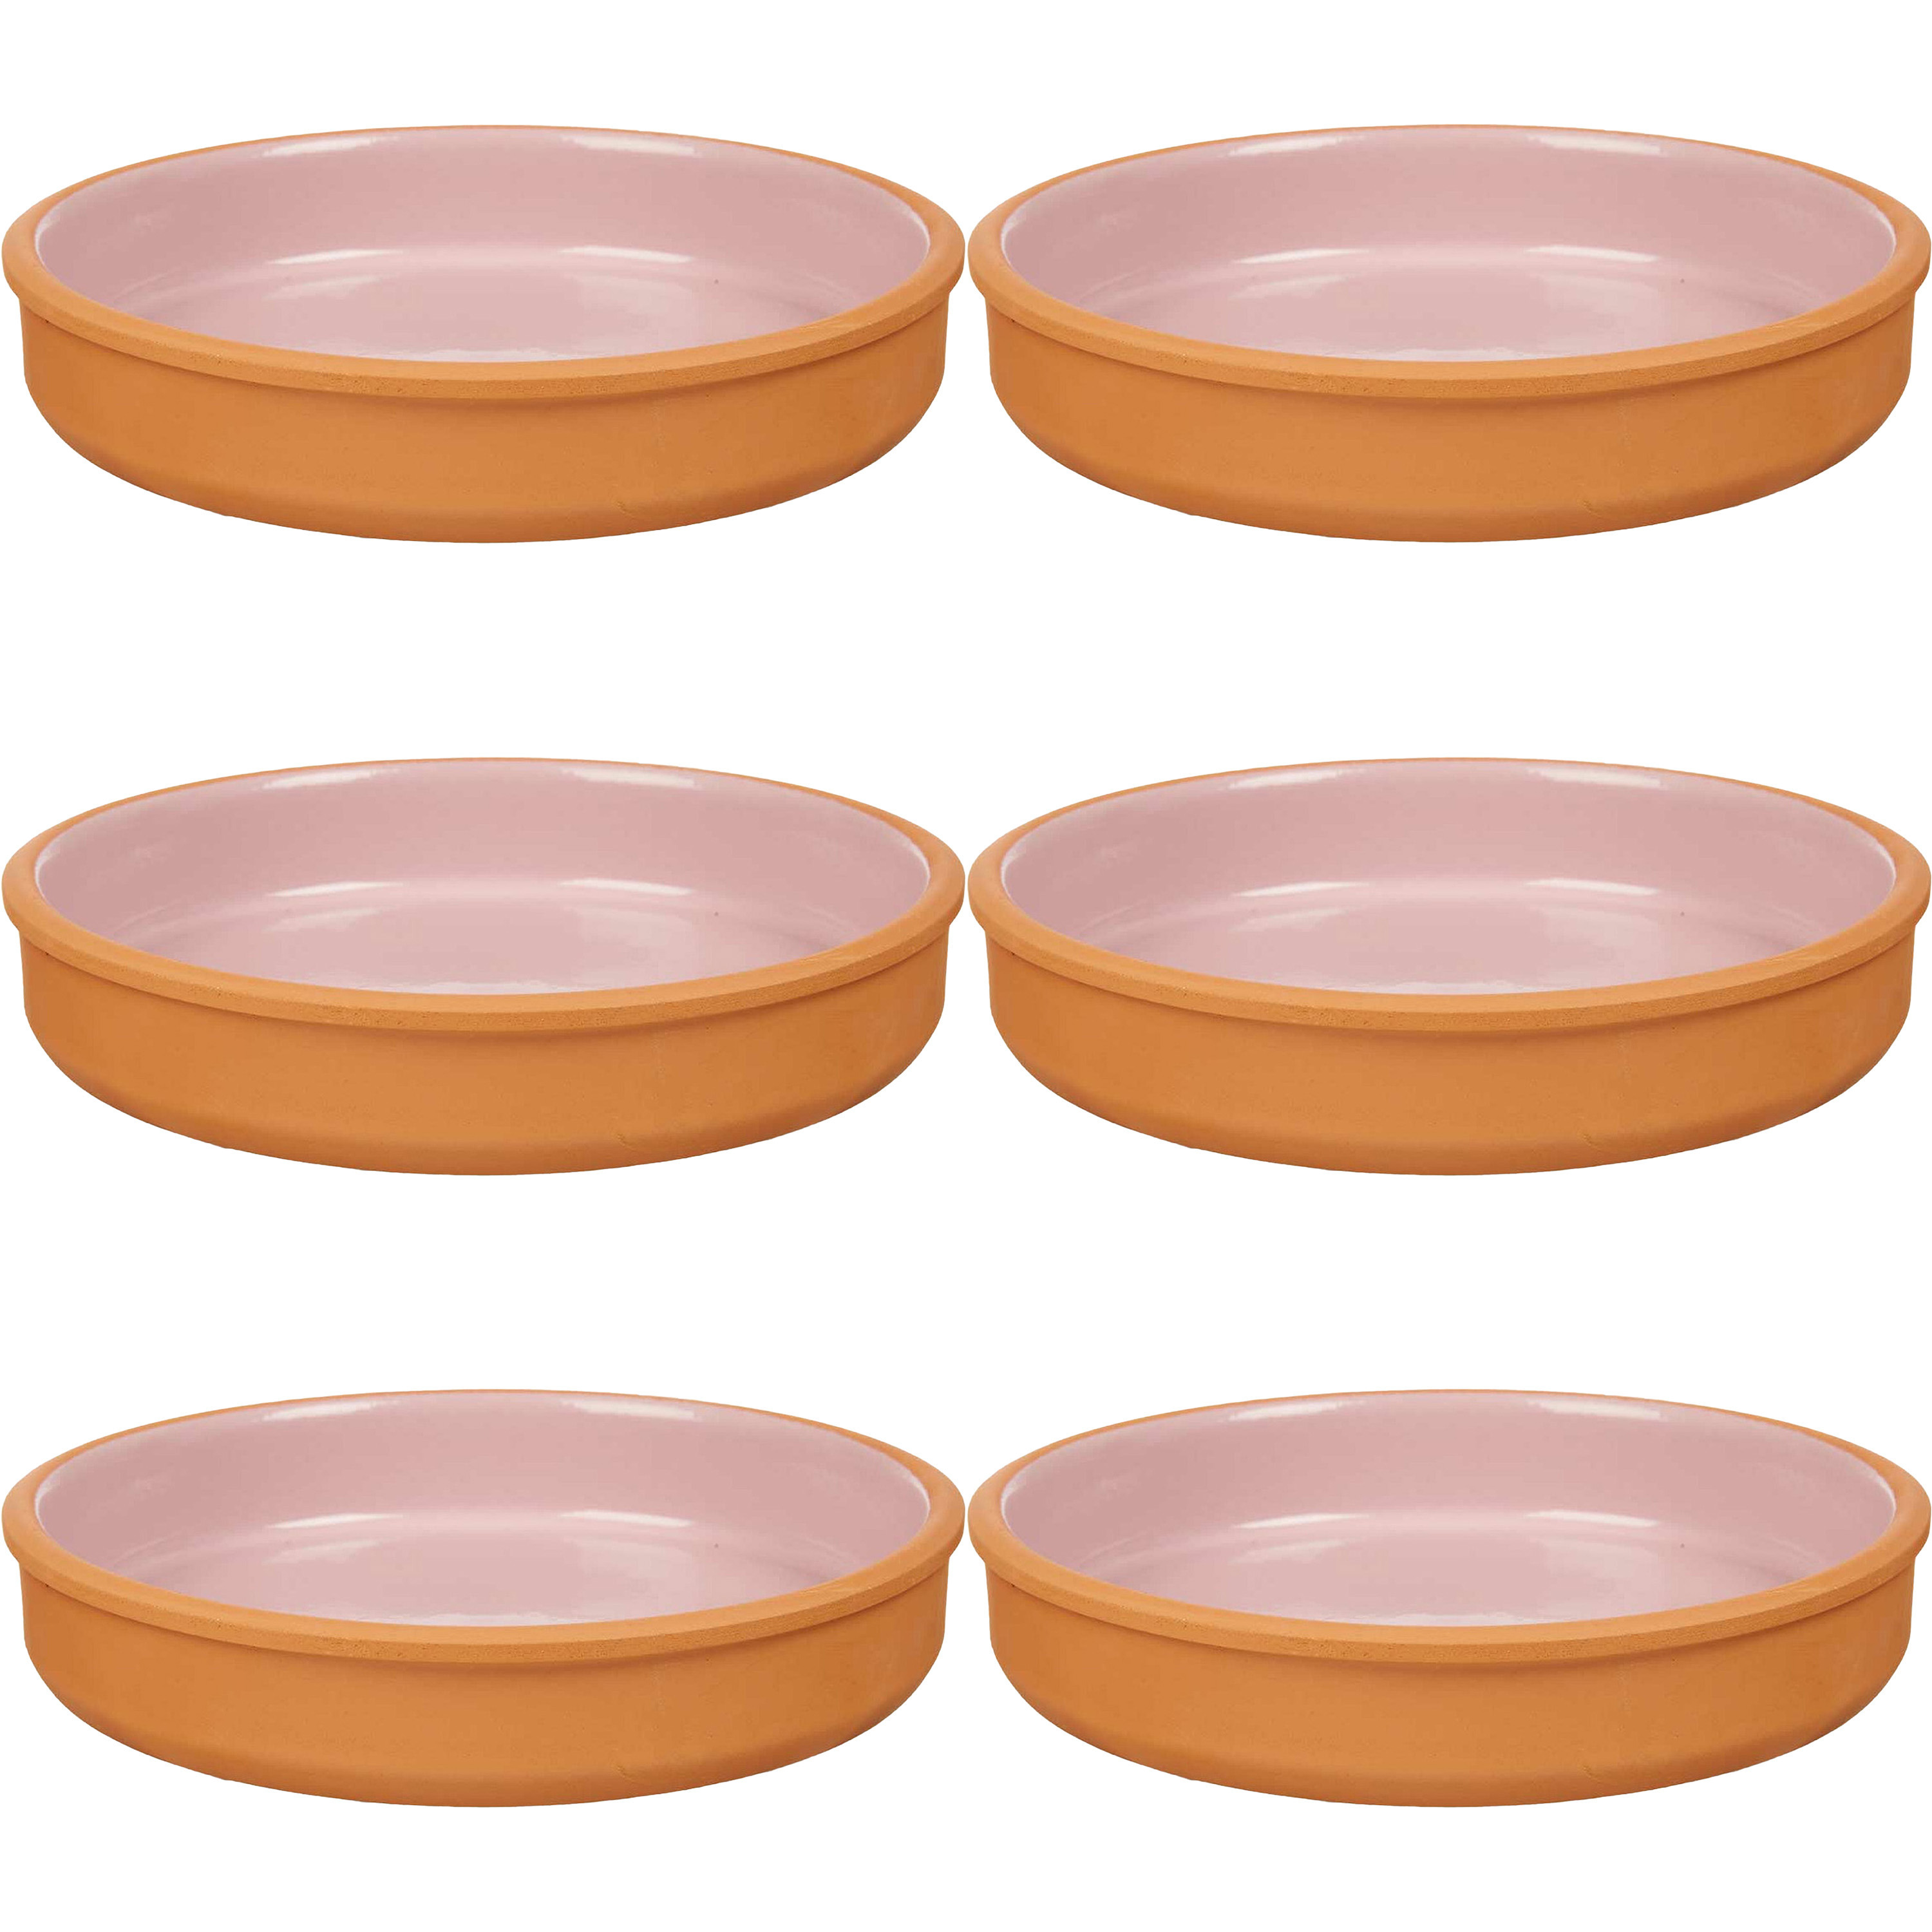 6x stuks tapas-hapjes serveren-oven schaal terracotta-roze 23 x 4 cm